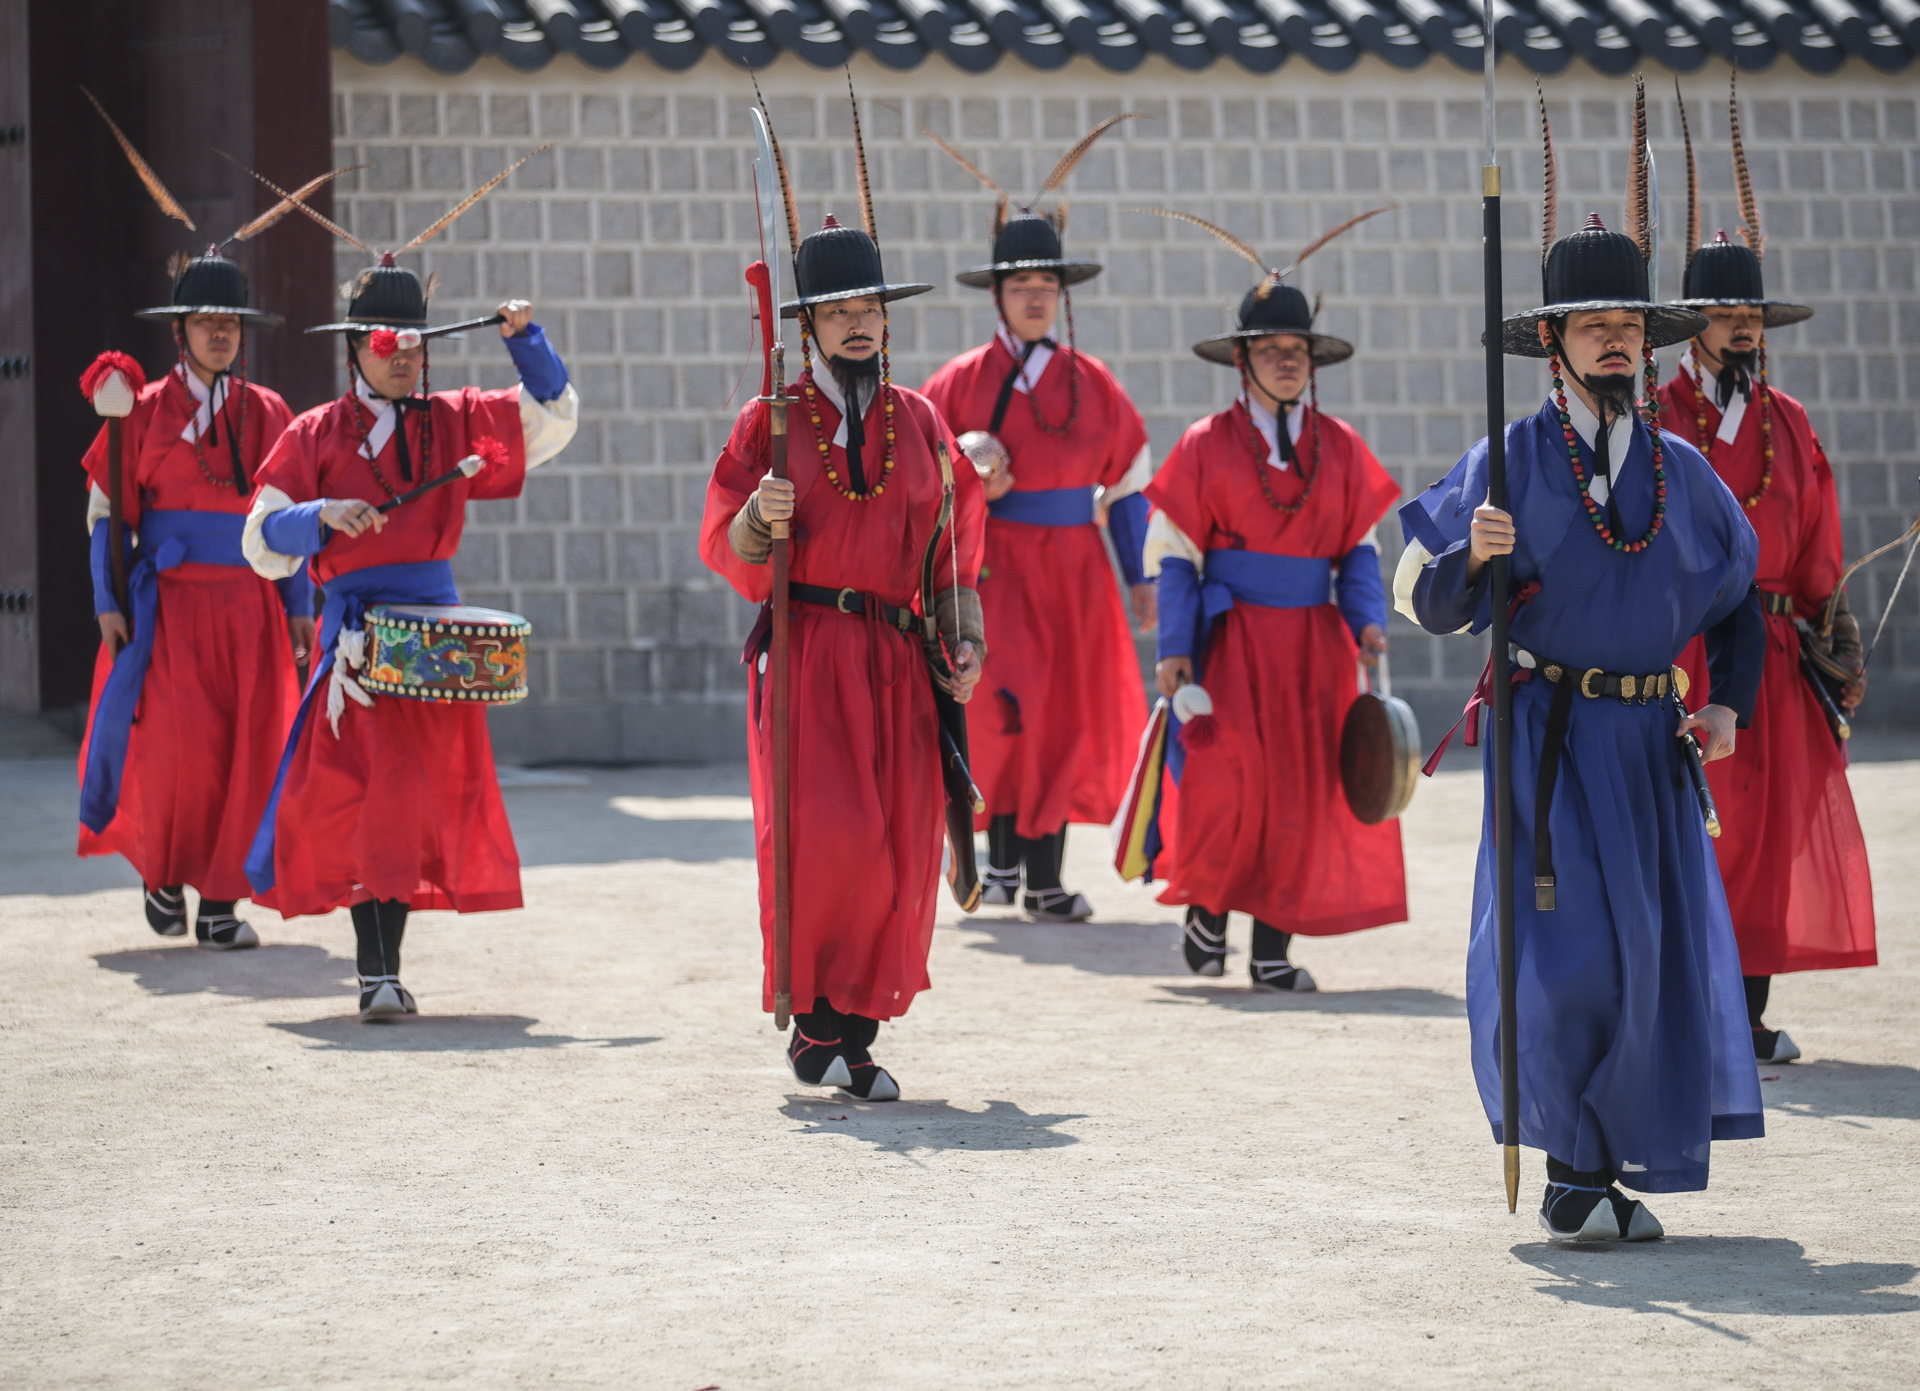 Soldats releve de la garde palais Gyeongbokgung